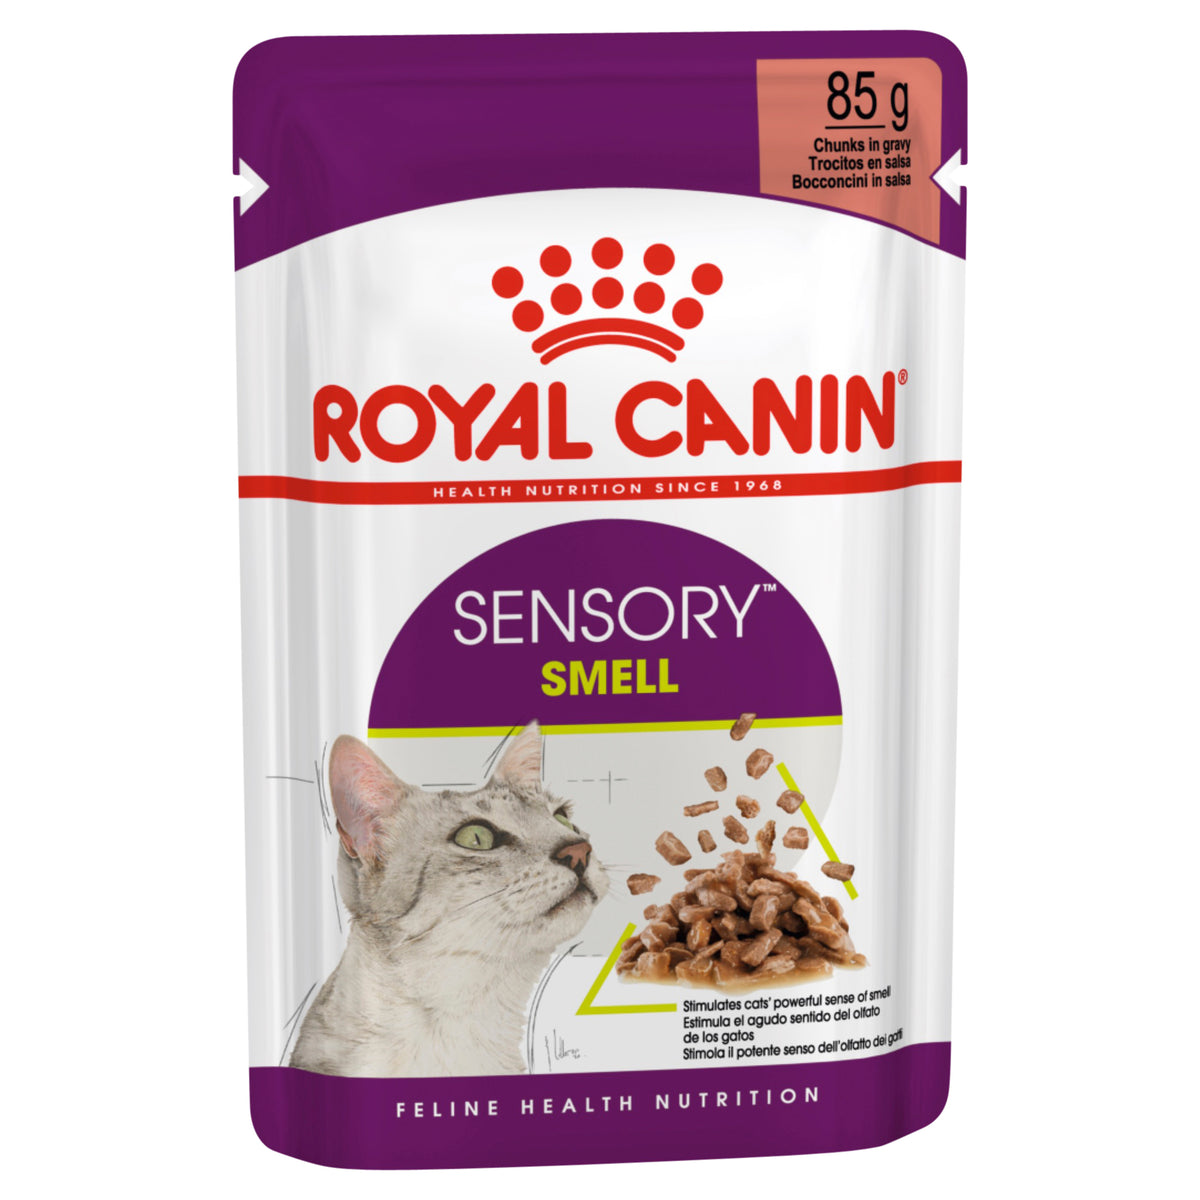 Royal Canin Sensory Smell Gravy Pouch